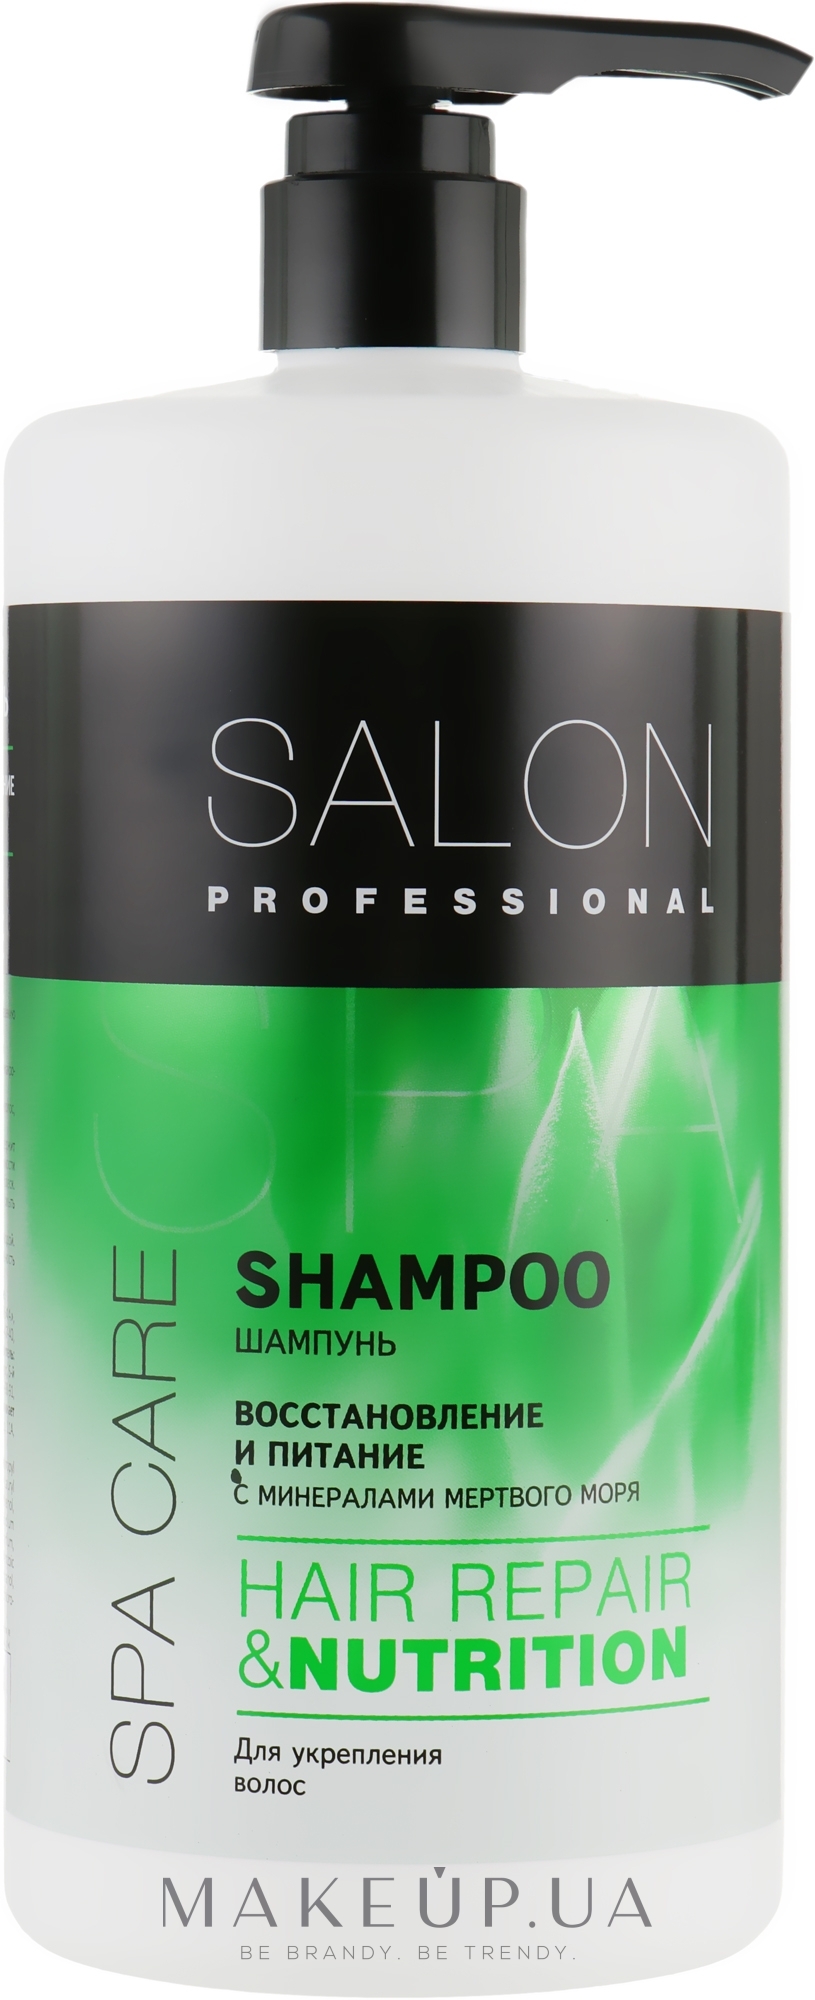 Шампунь для ломких и склонных к выпадению волос - Salon Professional Spa Care Nutrition Shampoo — фото 1000ml